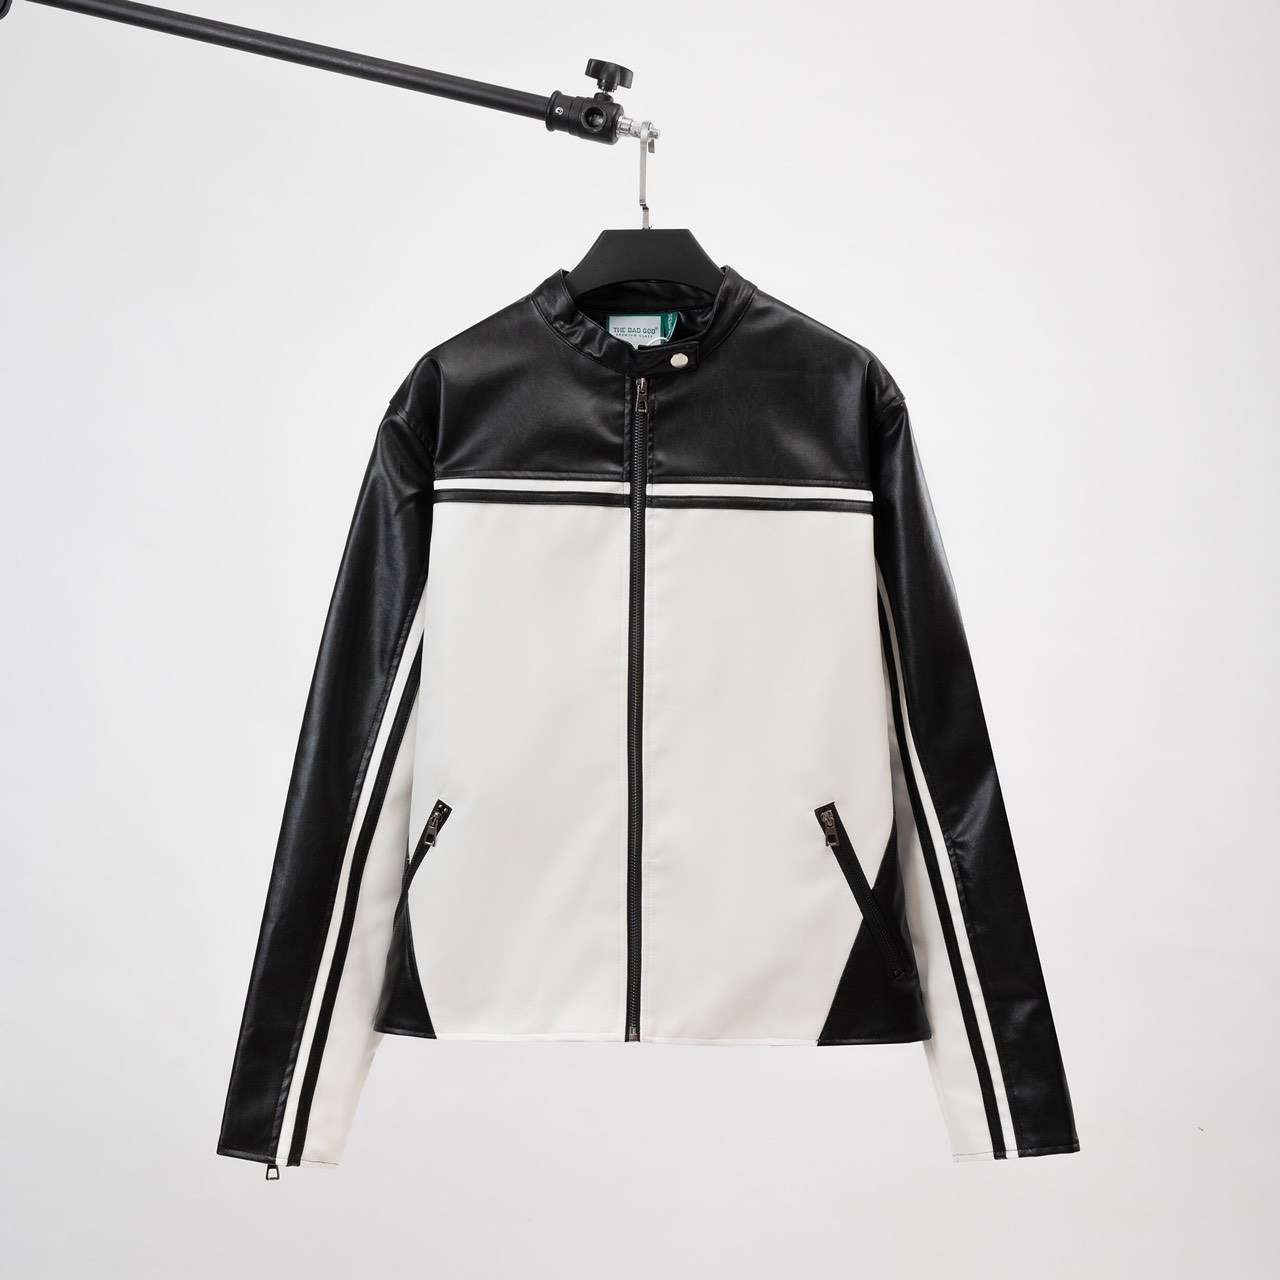 Giảm giá Áo khoác kaki nam thiết kế độc đáo lót dù đen có túi trong dày  dặn, áo khoác chống nắng giữ lạnh vnxk m01 - BeeCost